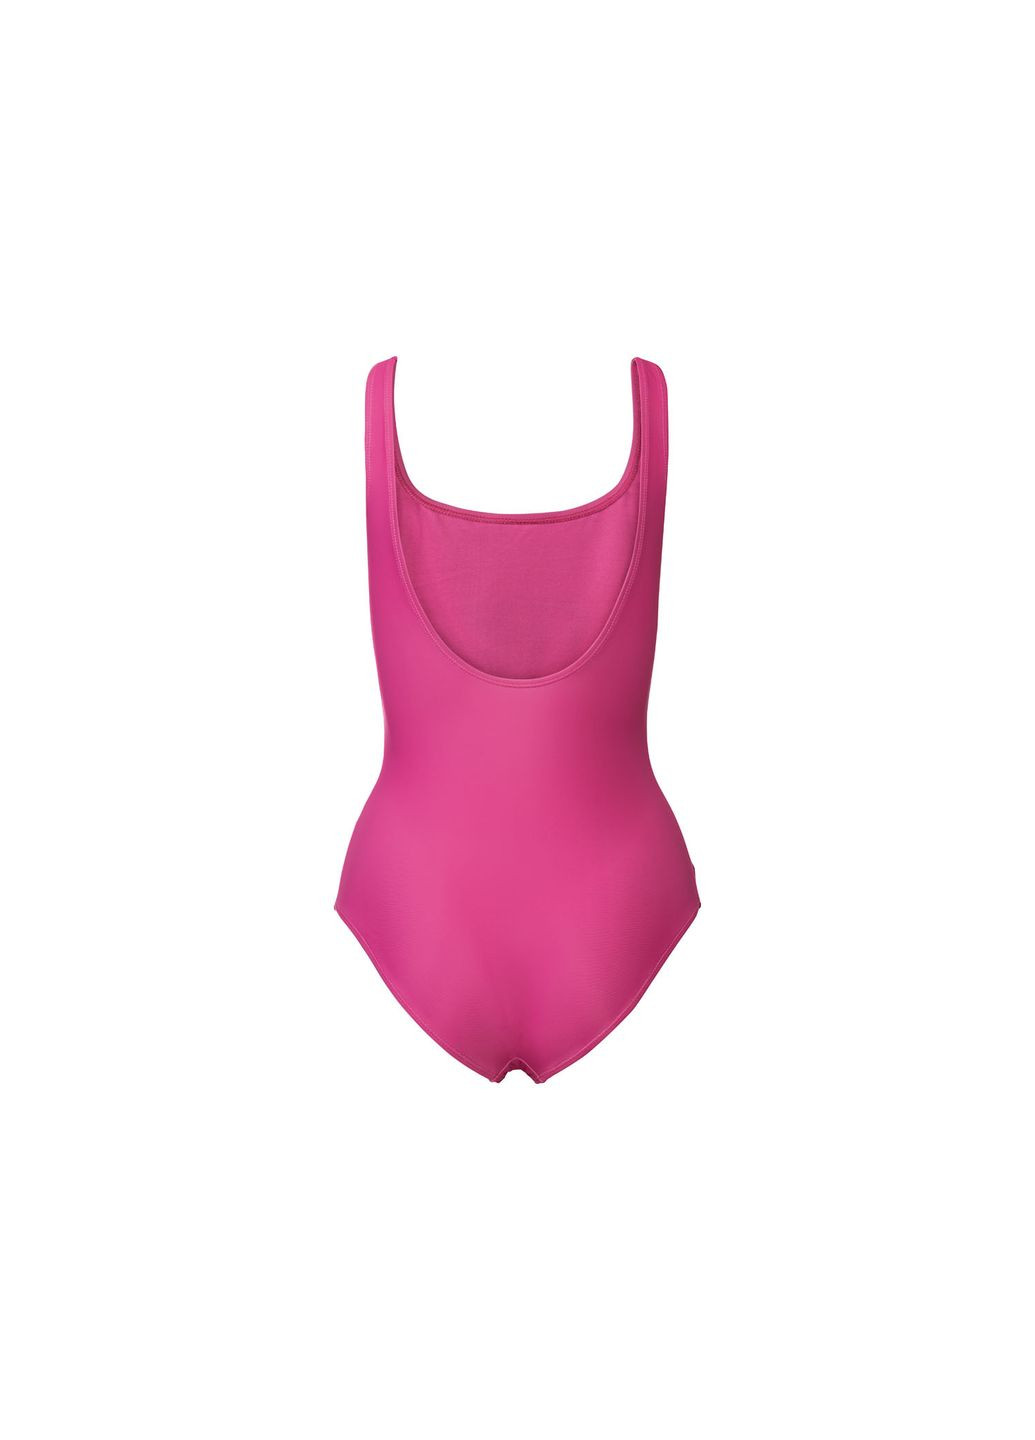 Розовый купальник слитный на подкладке для женщины creora® 372115 бикини Esmara С открытой спиной, С открытыми плечами